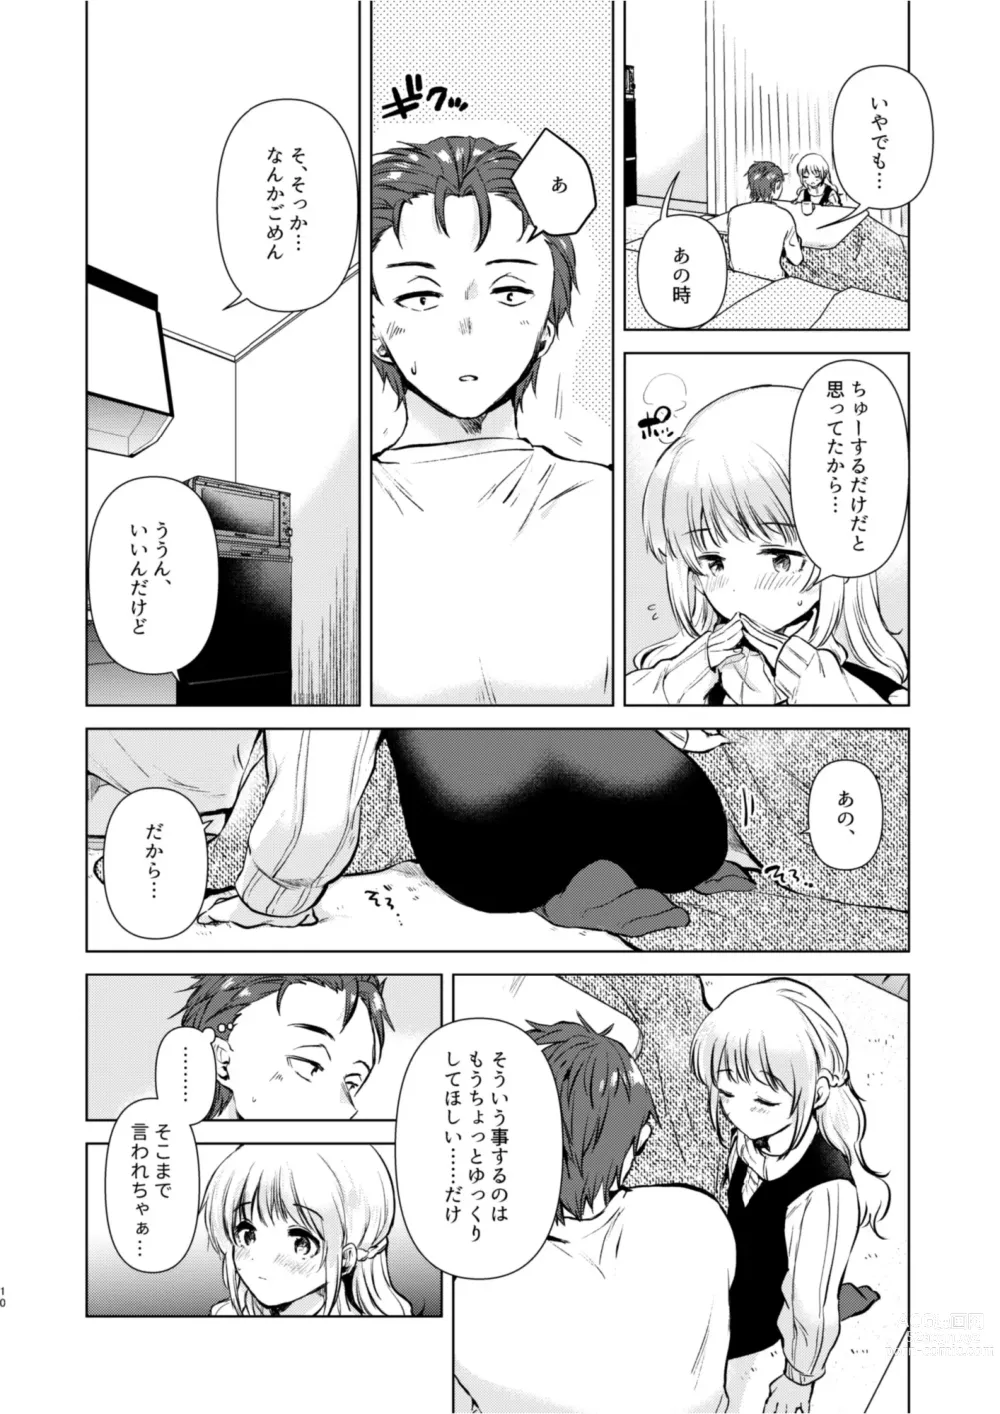 Page 9 of doujinshi Tsumugi-chan no Seichouki